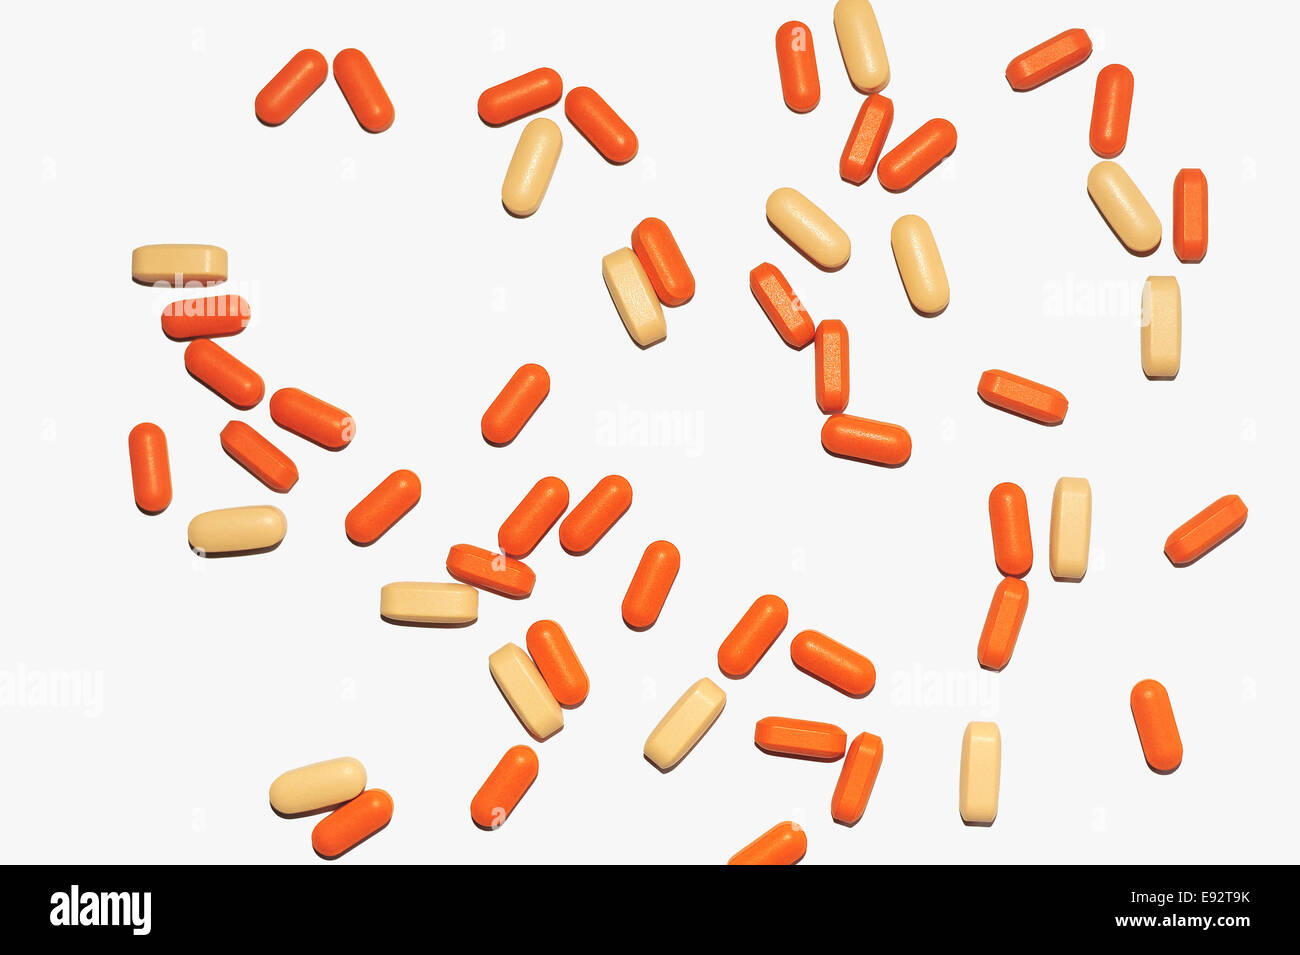 Une image d'un lâche quelques pilules médical orange et jaune sur un fond blanc. Banque D'Images